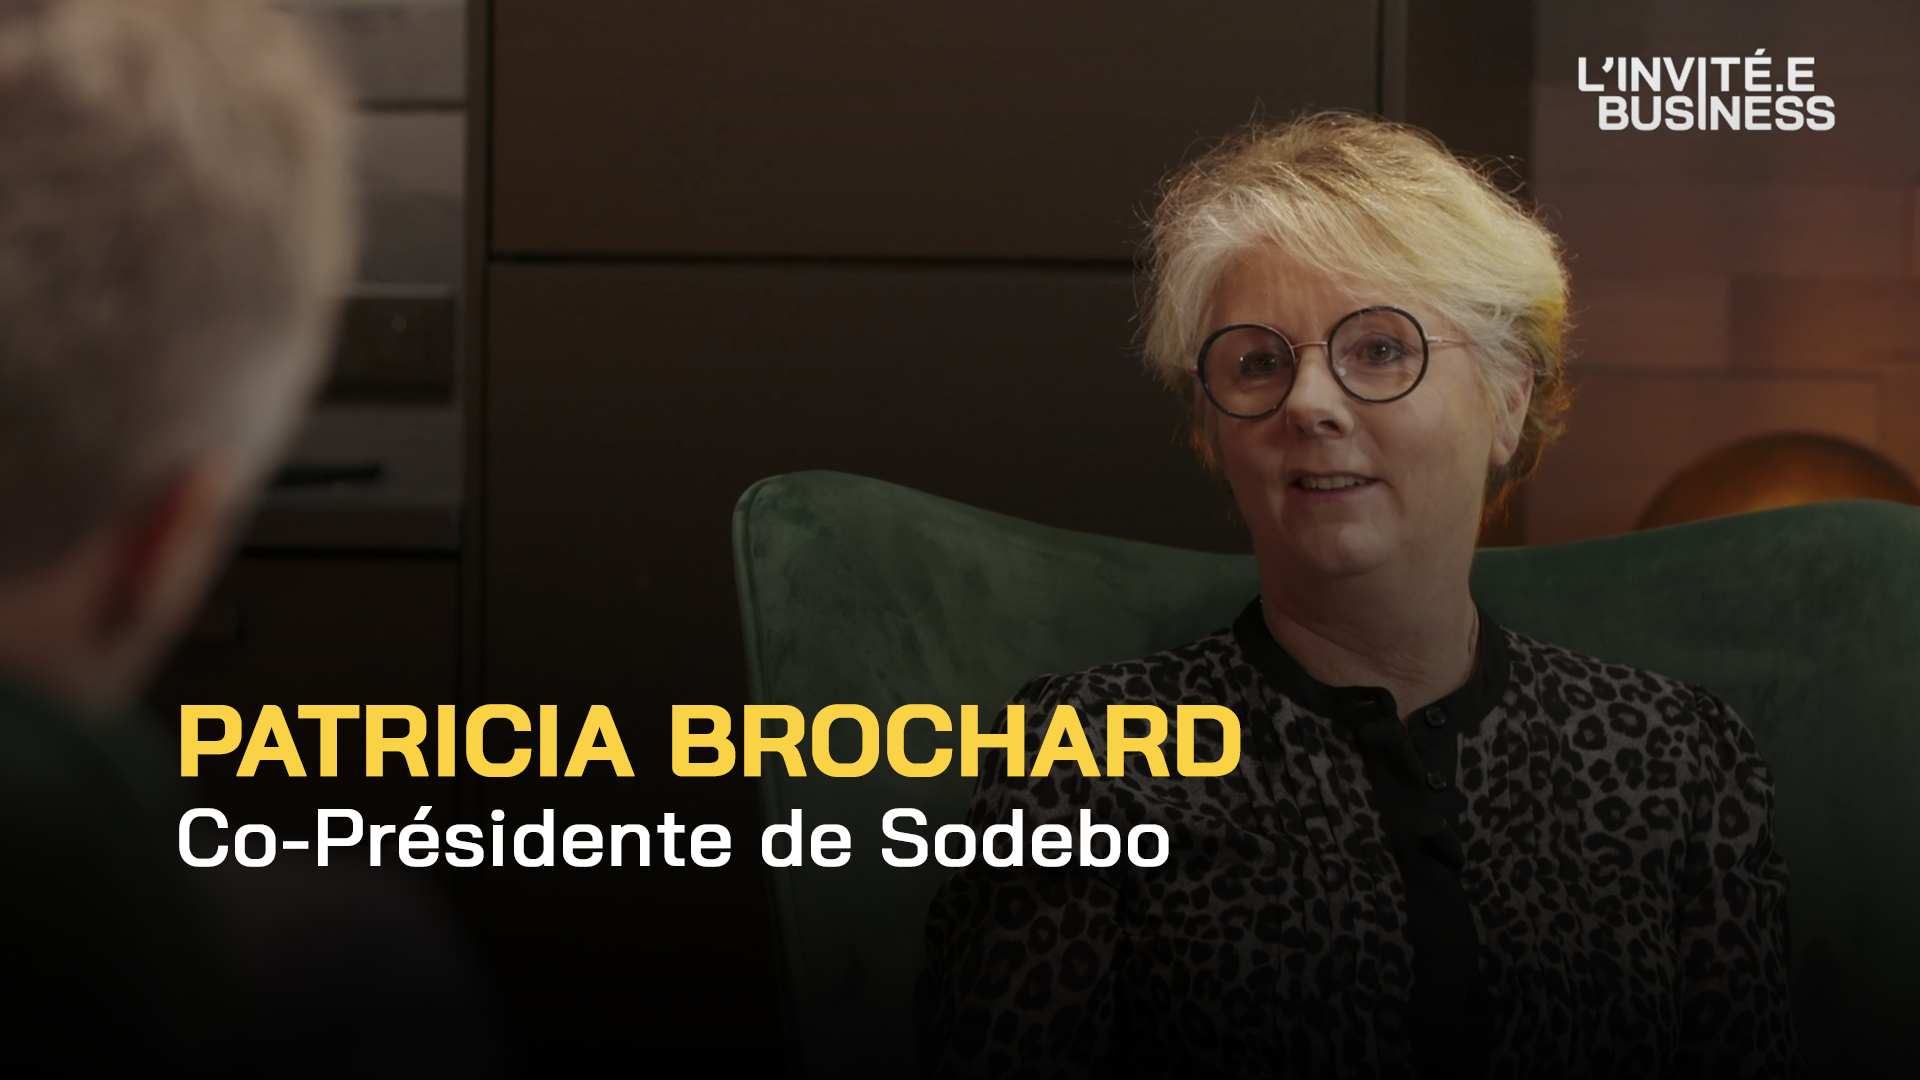 Patricia Brochard, L'Émission longue avec l'Invitée Business